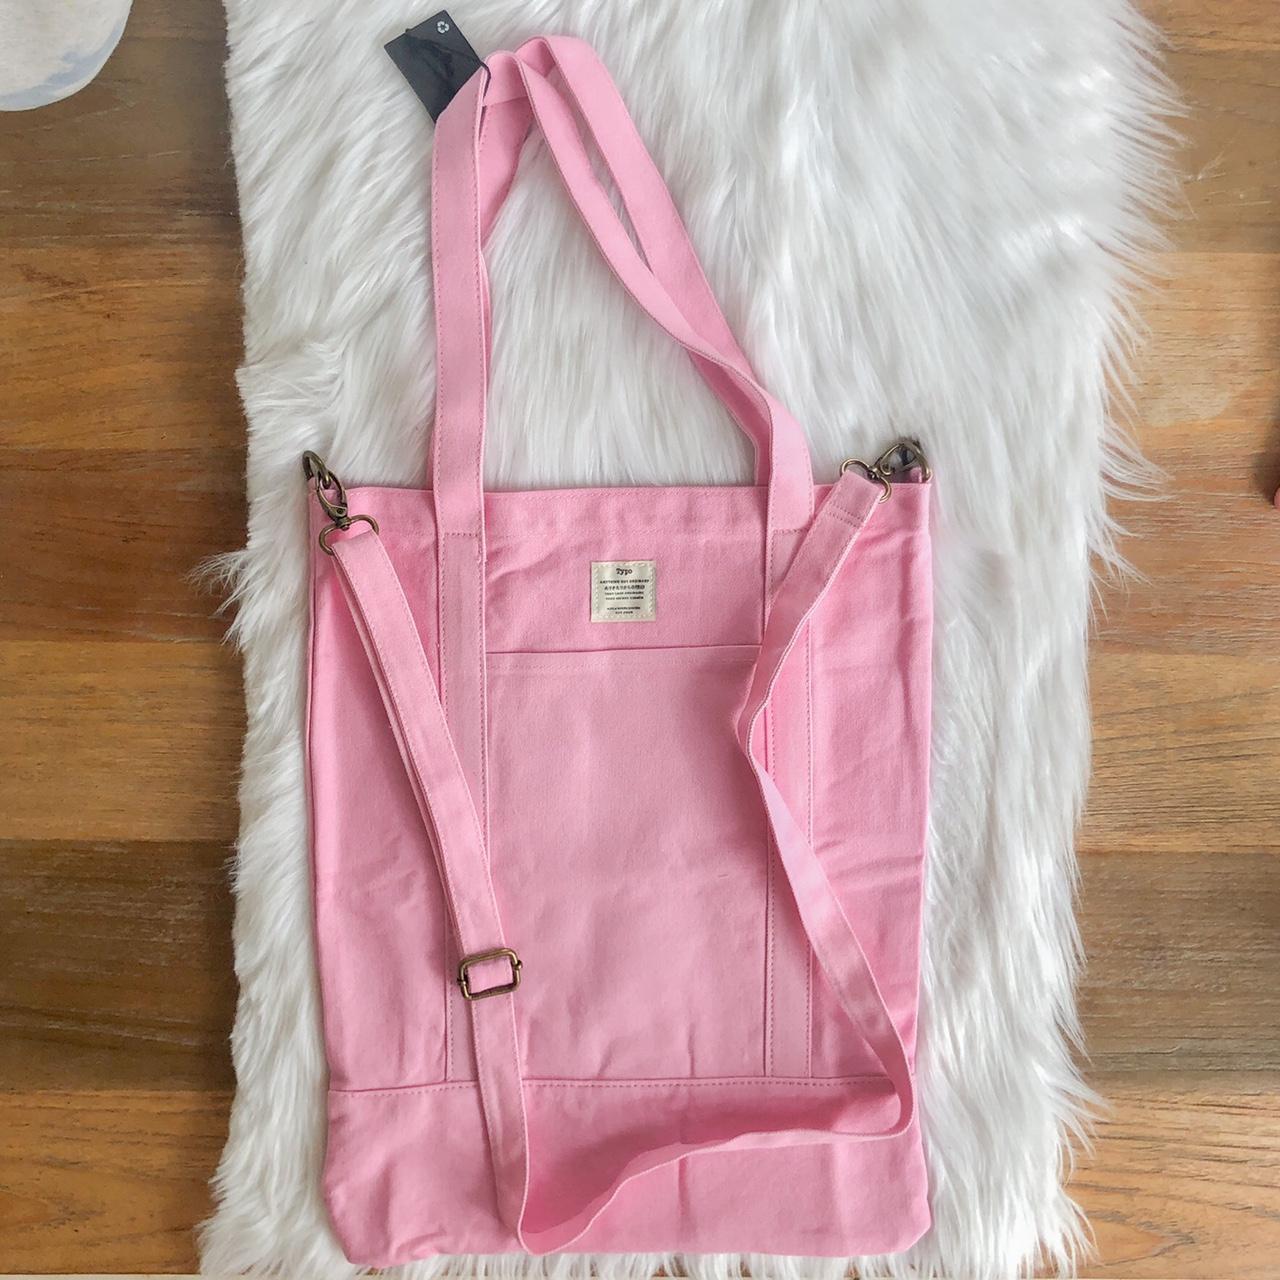 Typo Women's Pink Bag